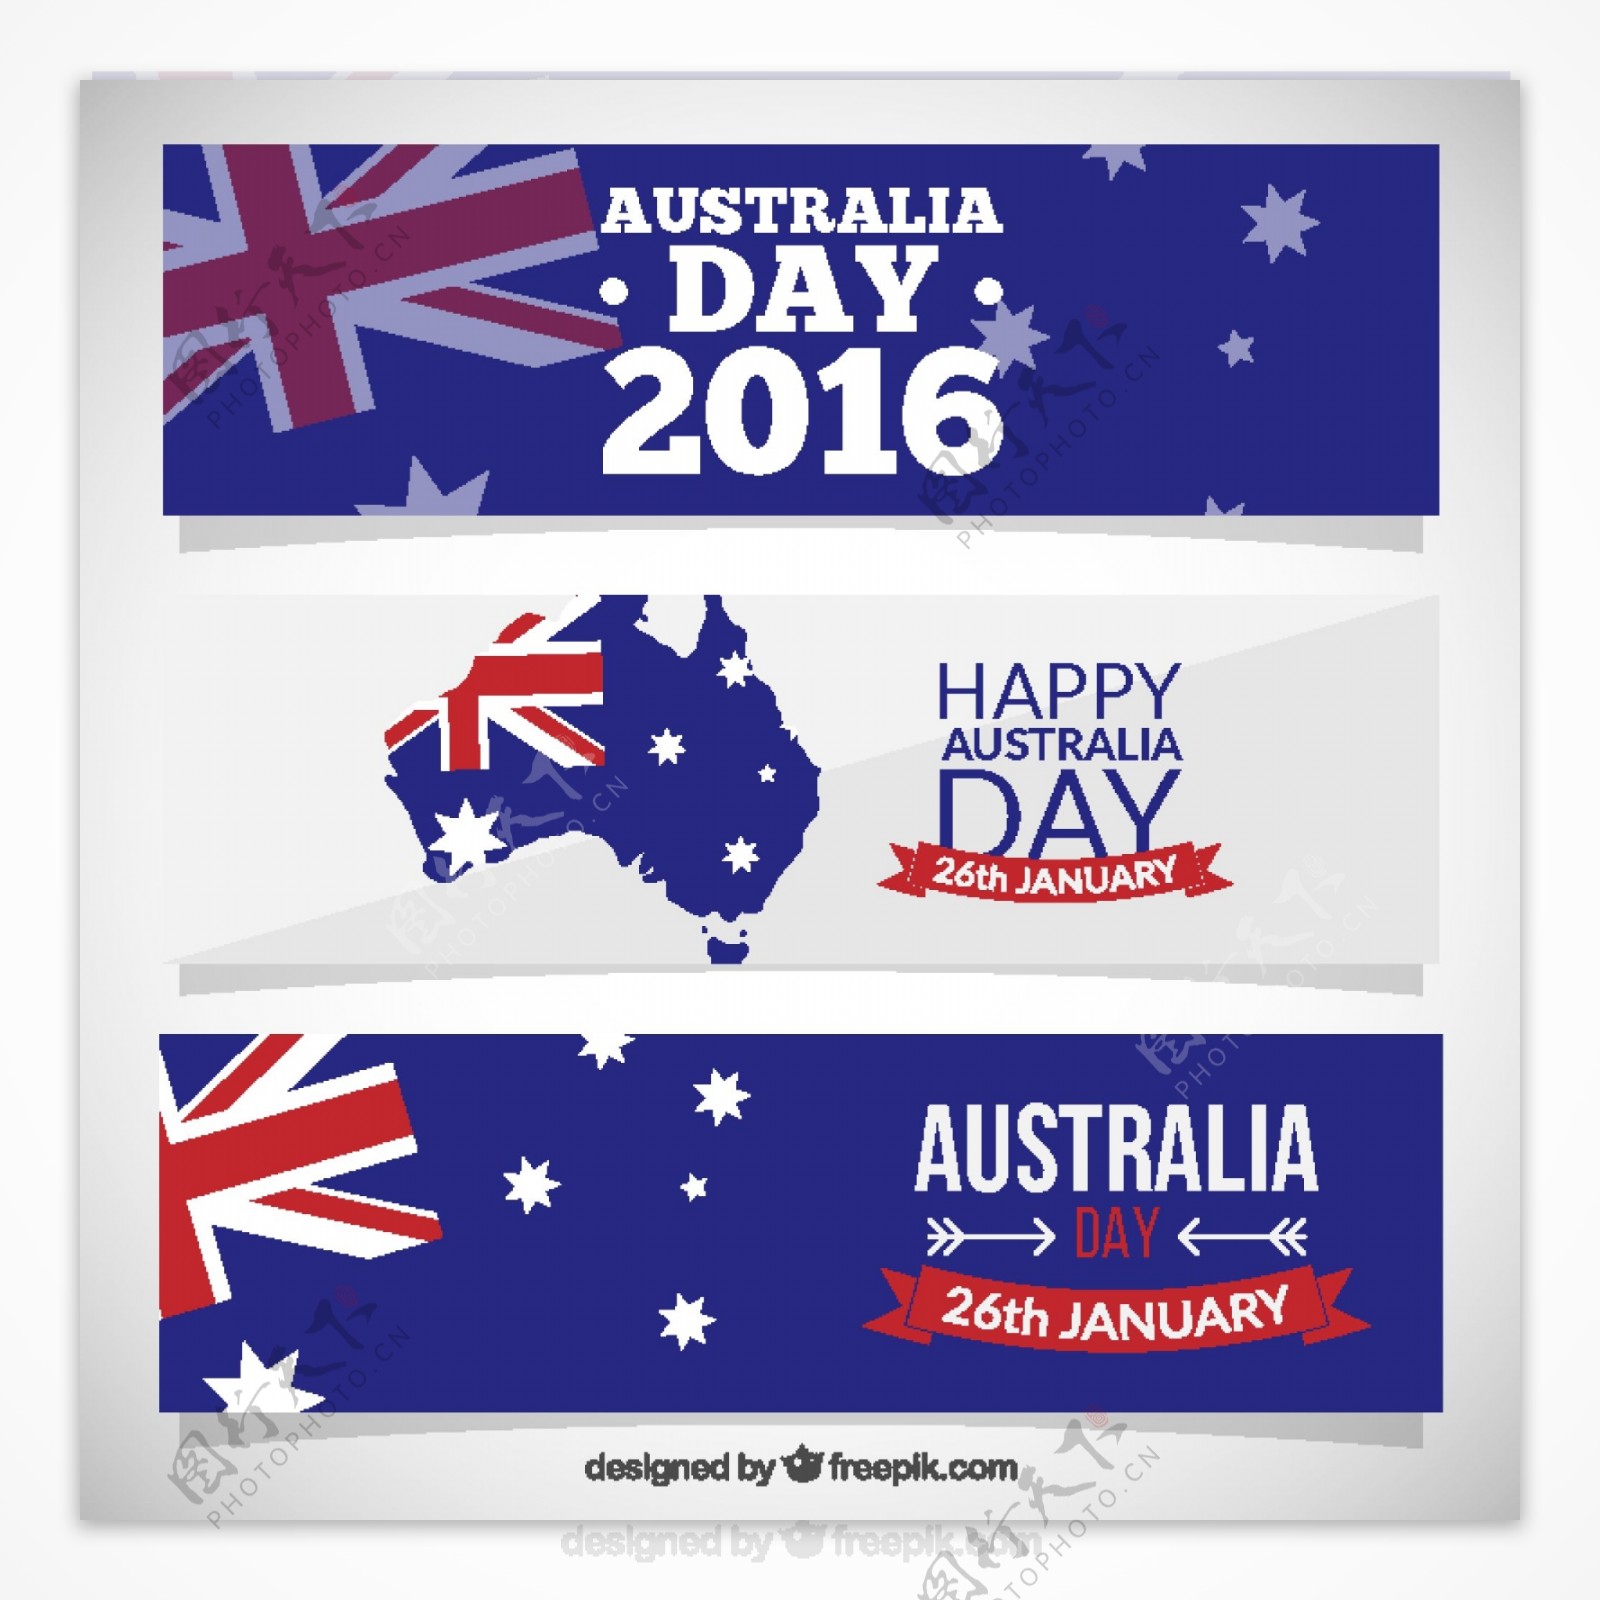 澳大利亚日快乐的横幅包